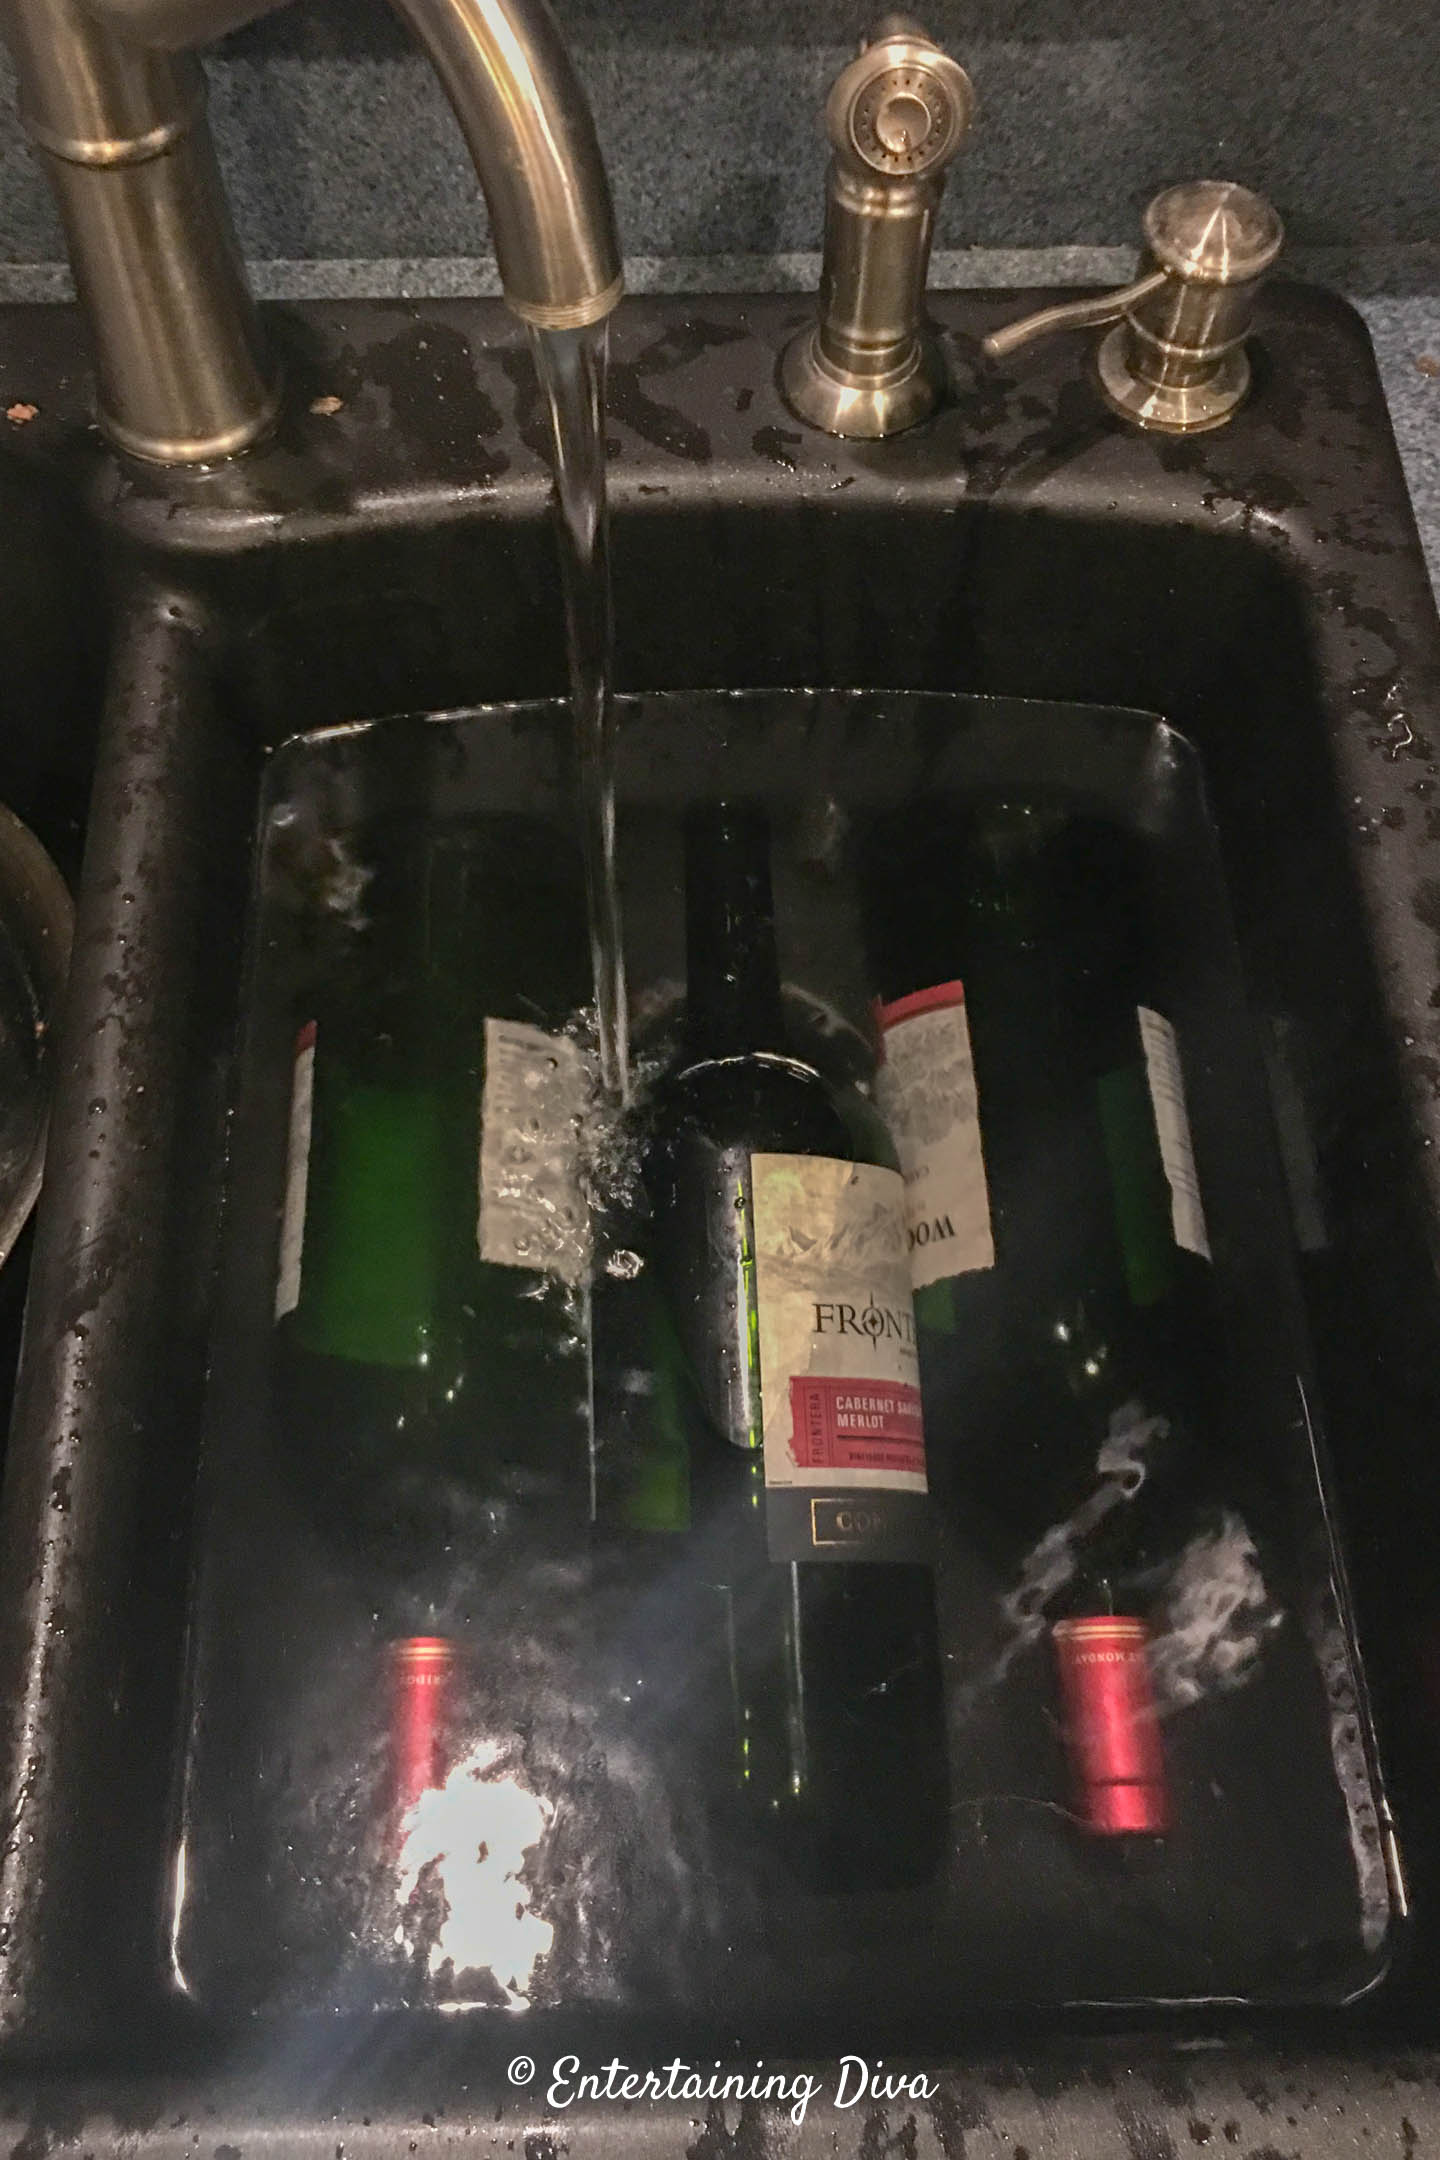 wine bottles soaking in water in the sink